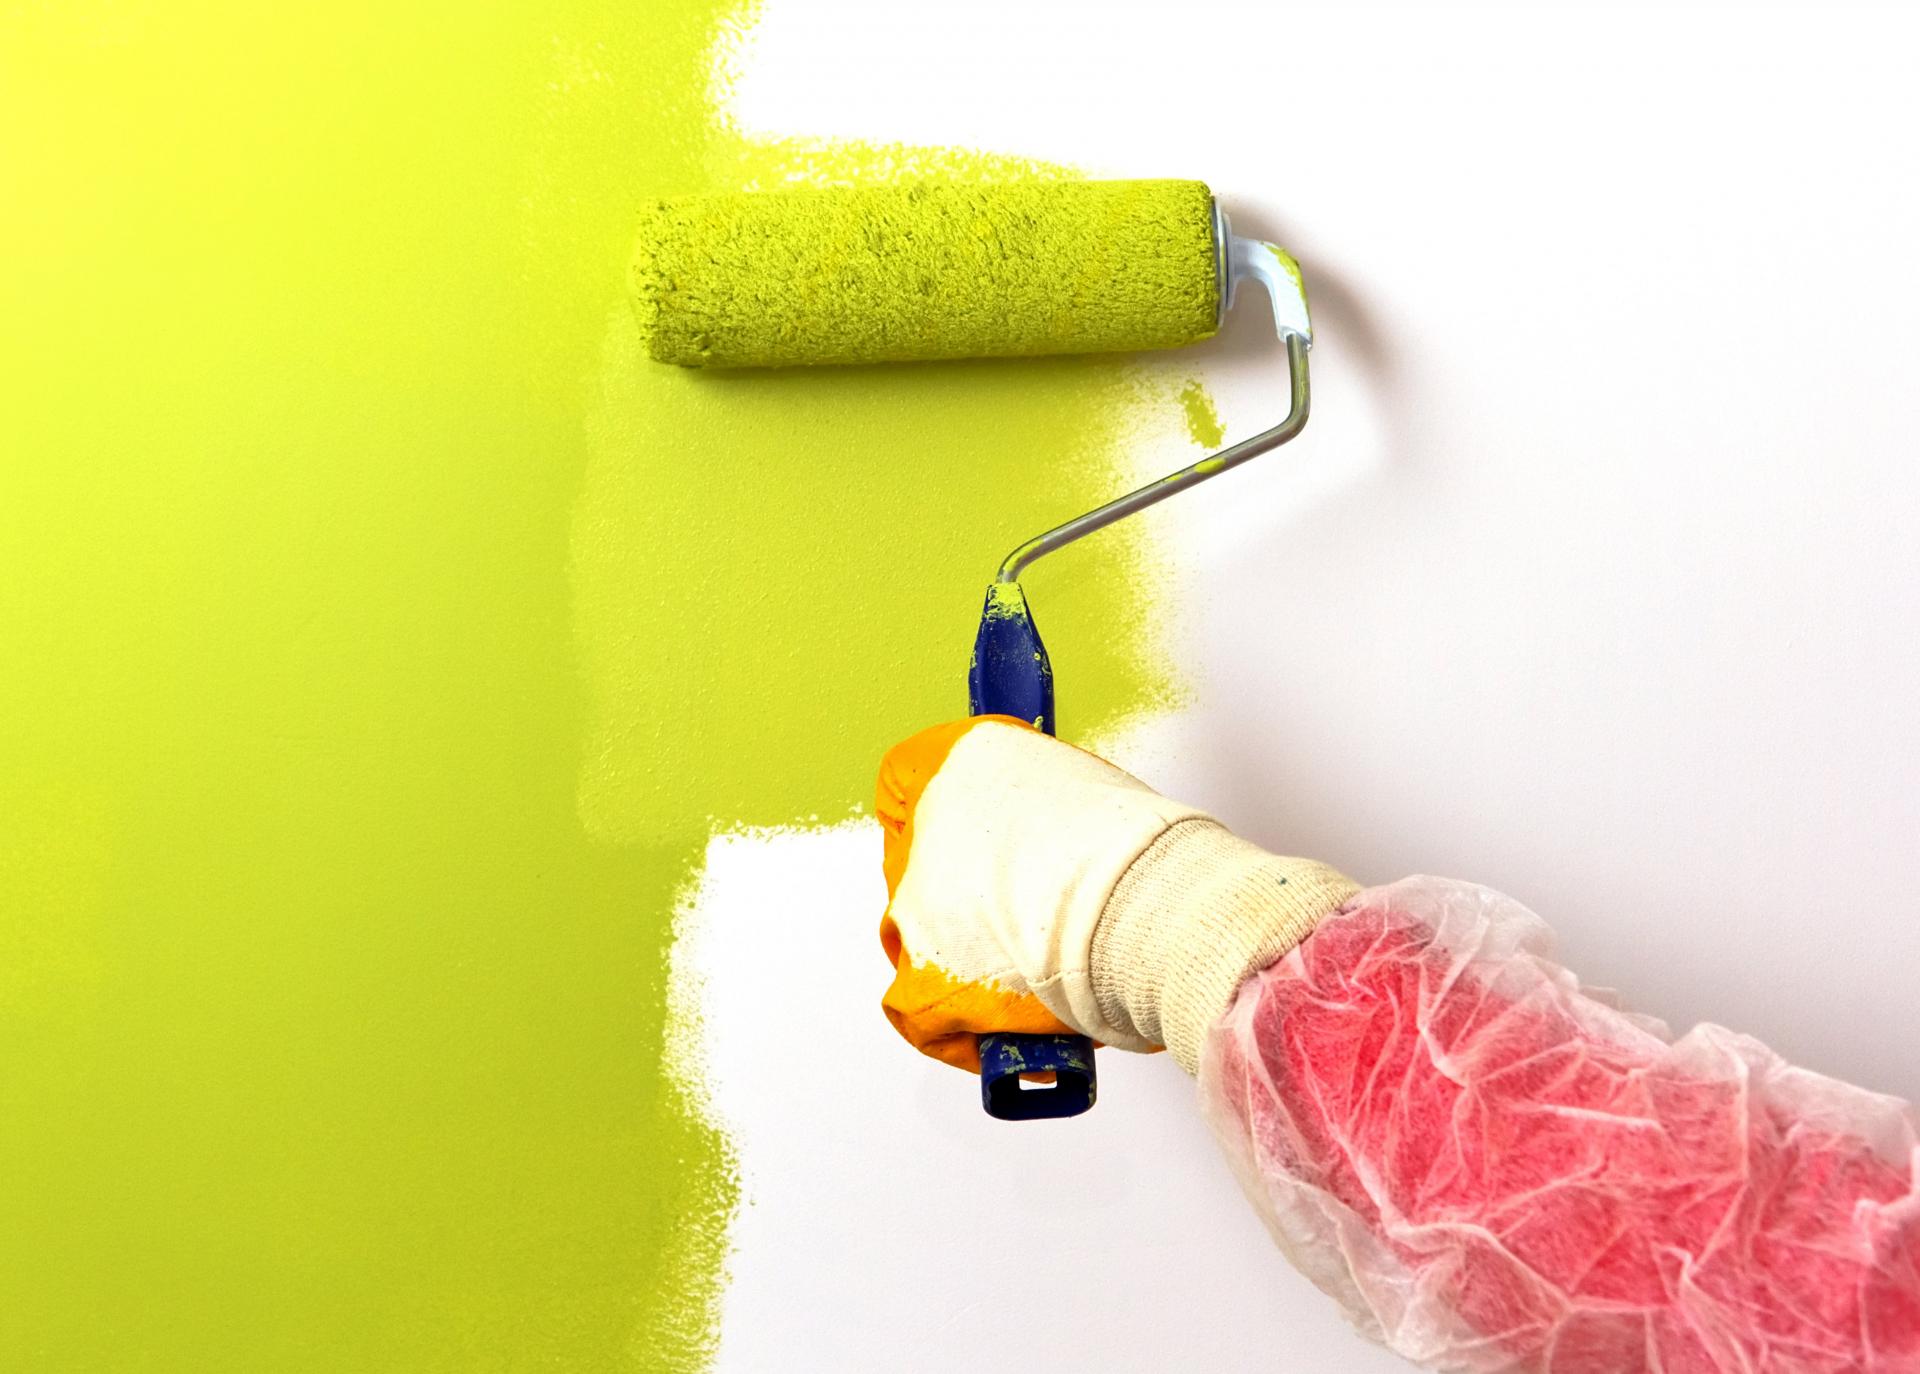 Как быстро избавиться от запаха краски в квартире после покраски